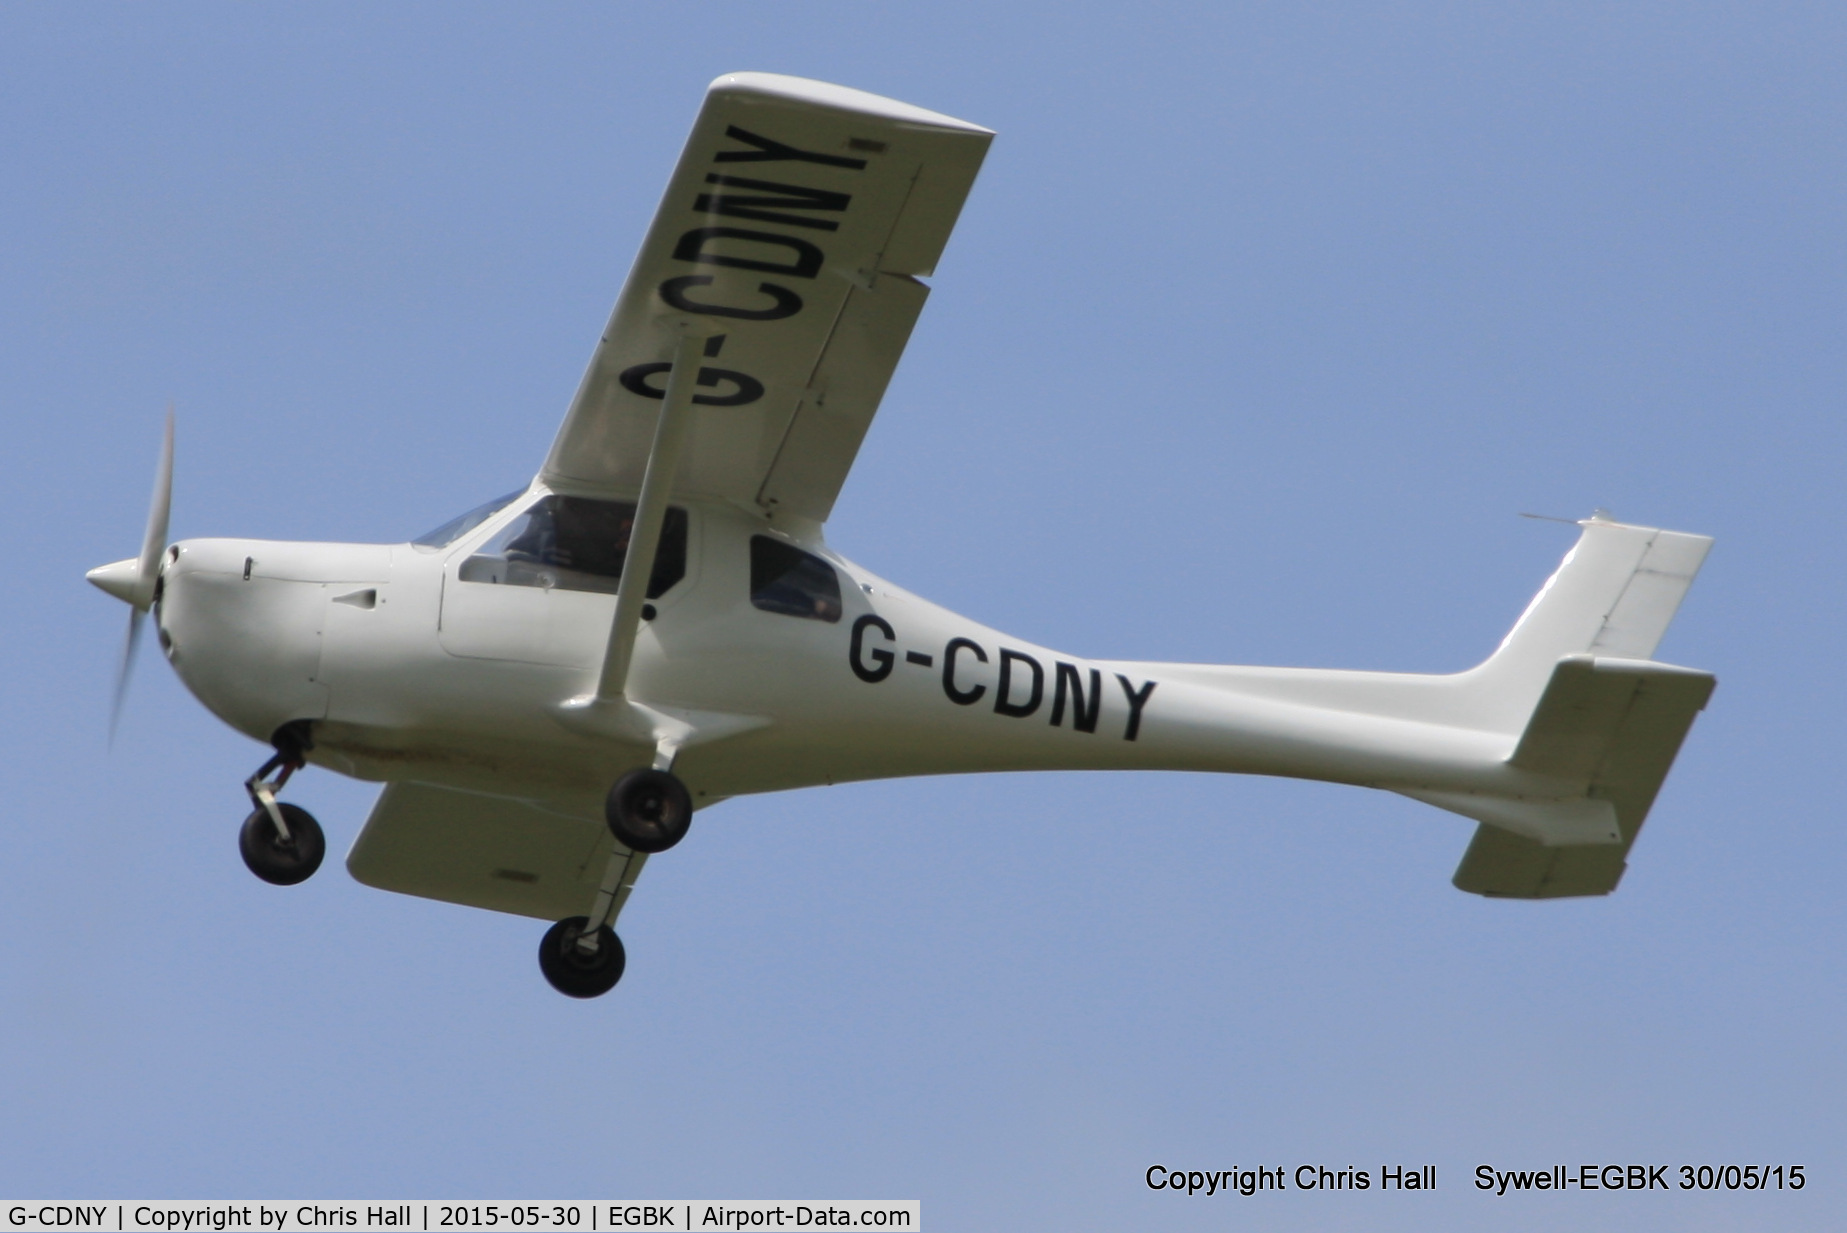 G-CDNY, 2006 Jabiru SP-470 C/N PFA 274B-14020, at Aeroexpo 2015